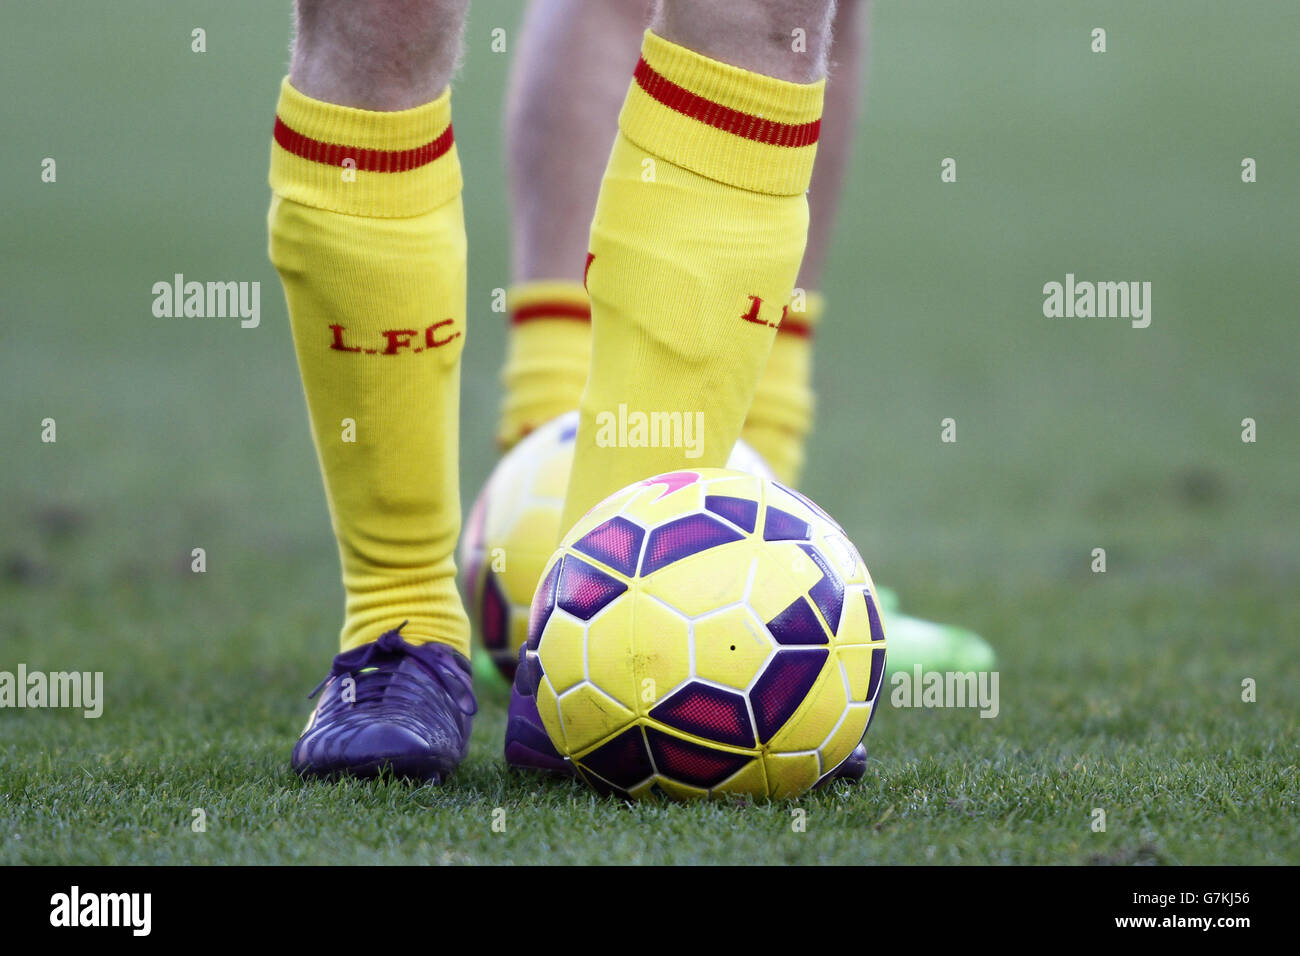 Football - Barclays Premier League - Sunderland / Liverpool - Stade de lumière.Une photo d'un joueur de Liverpool jambes avec une balle et une chaussette avec la lettre L.F.C Banque D'Images